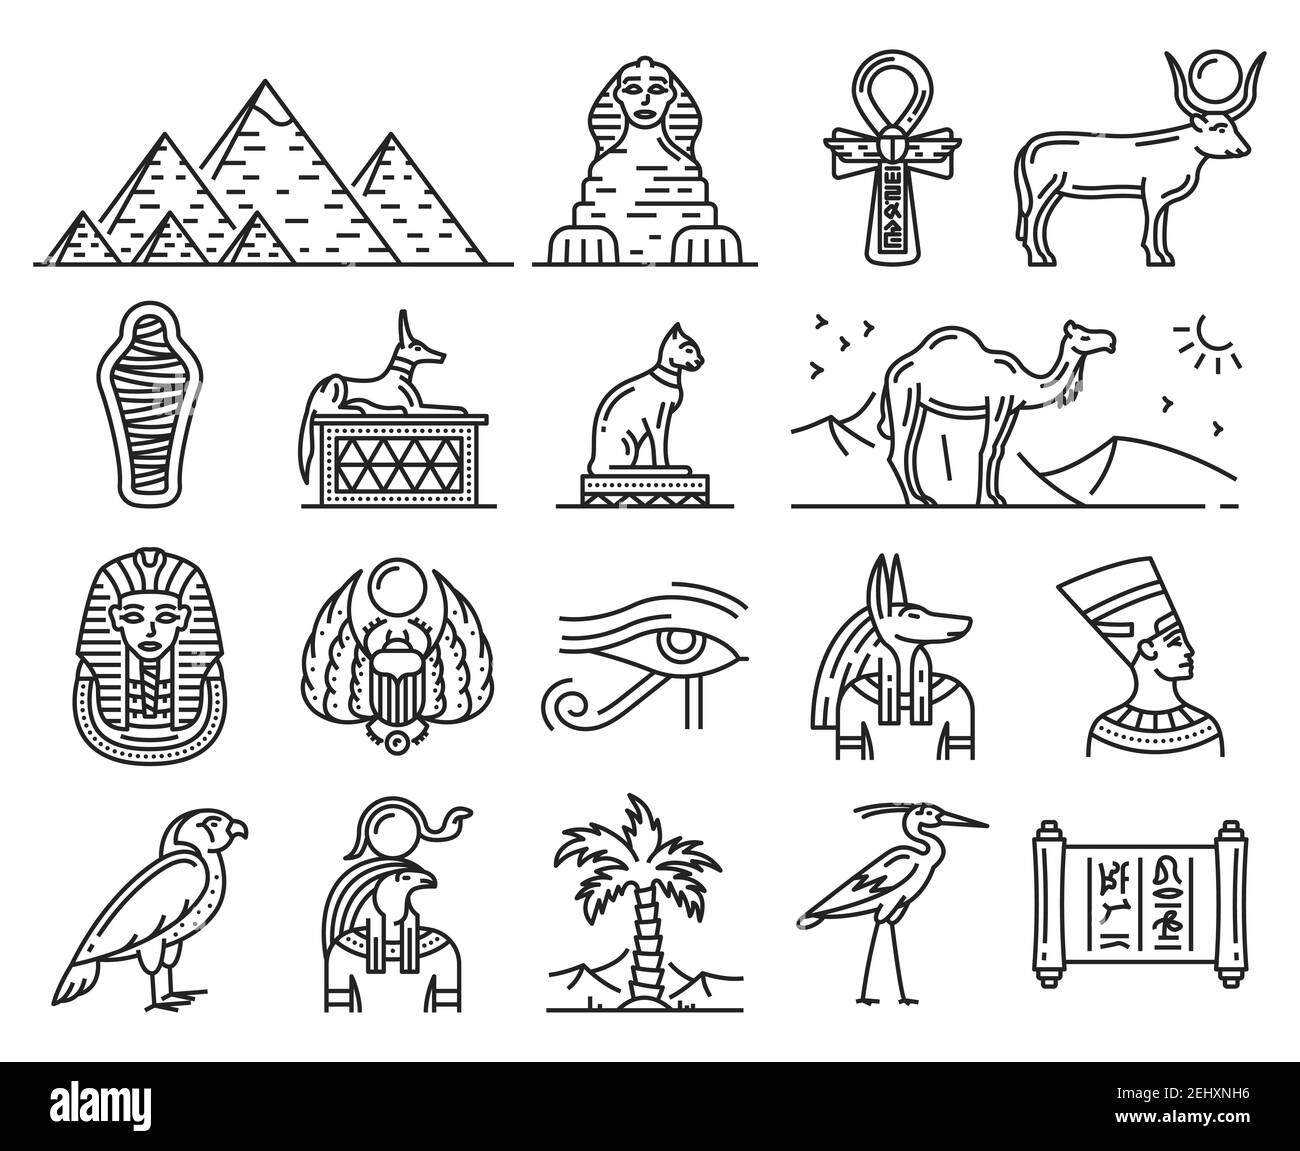 Ägypten dünne Linie Ikonen der alten Götter und Religion Symbole. Sphinx, pharao Pyramiden und Anubis, Ankh, Horus Auge und Tutanchamun Mama, Katze, Hieroglyp Stock Vektor